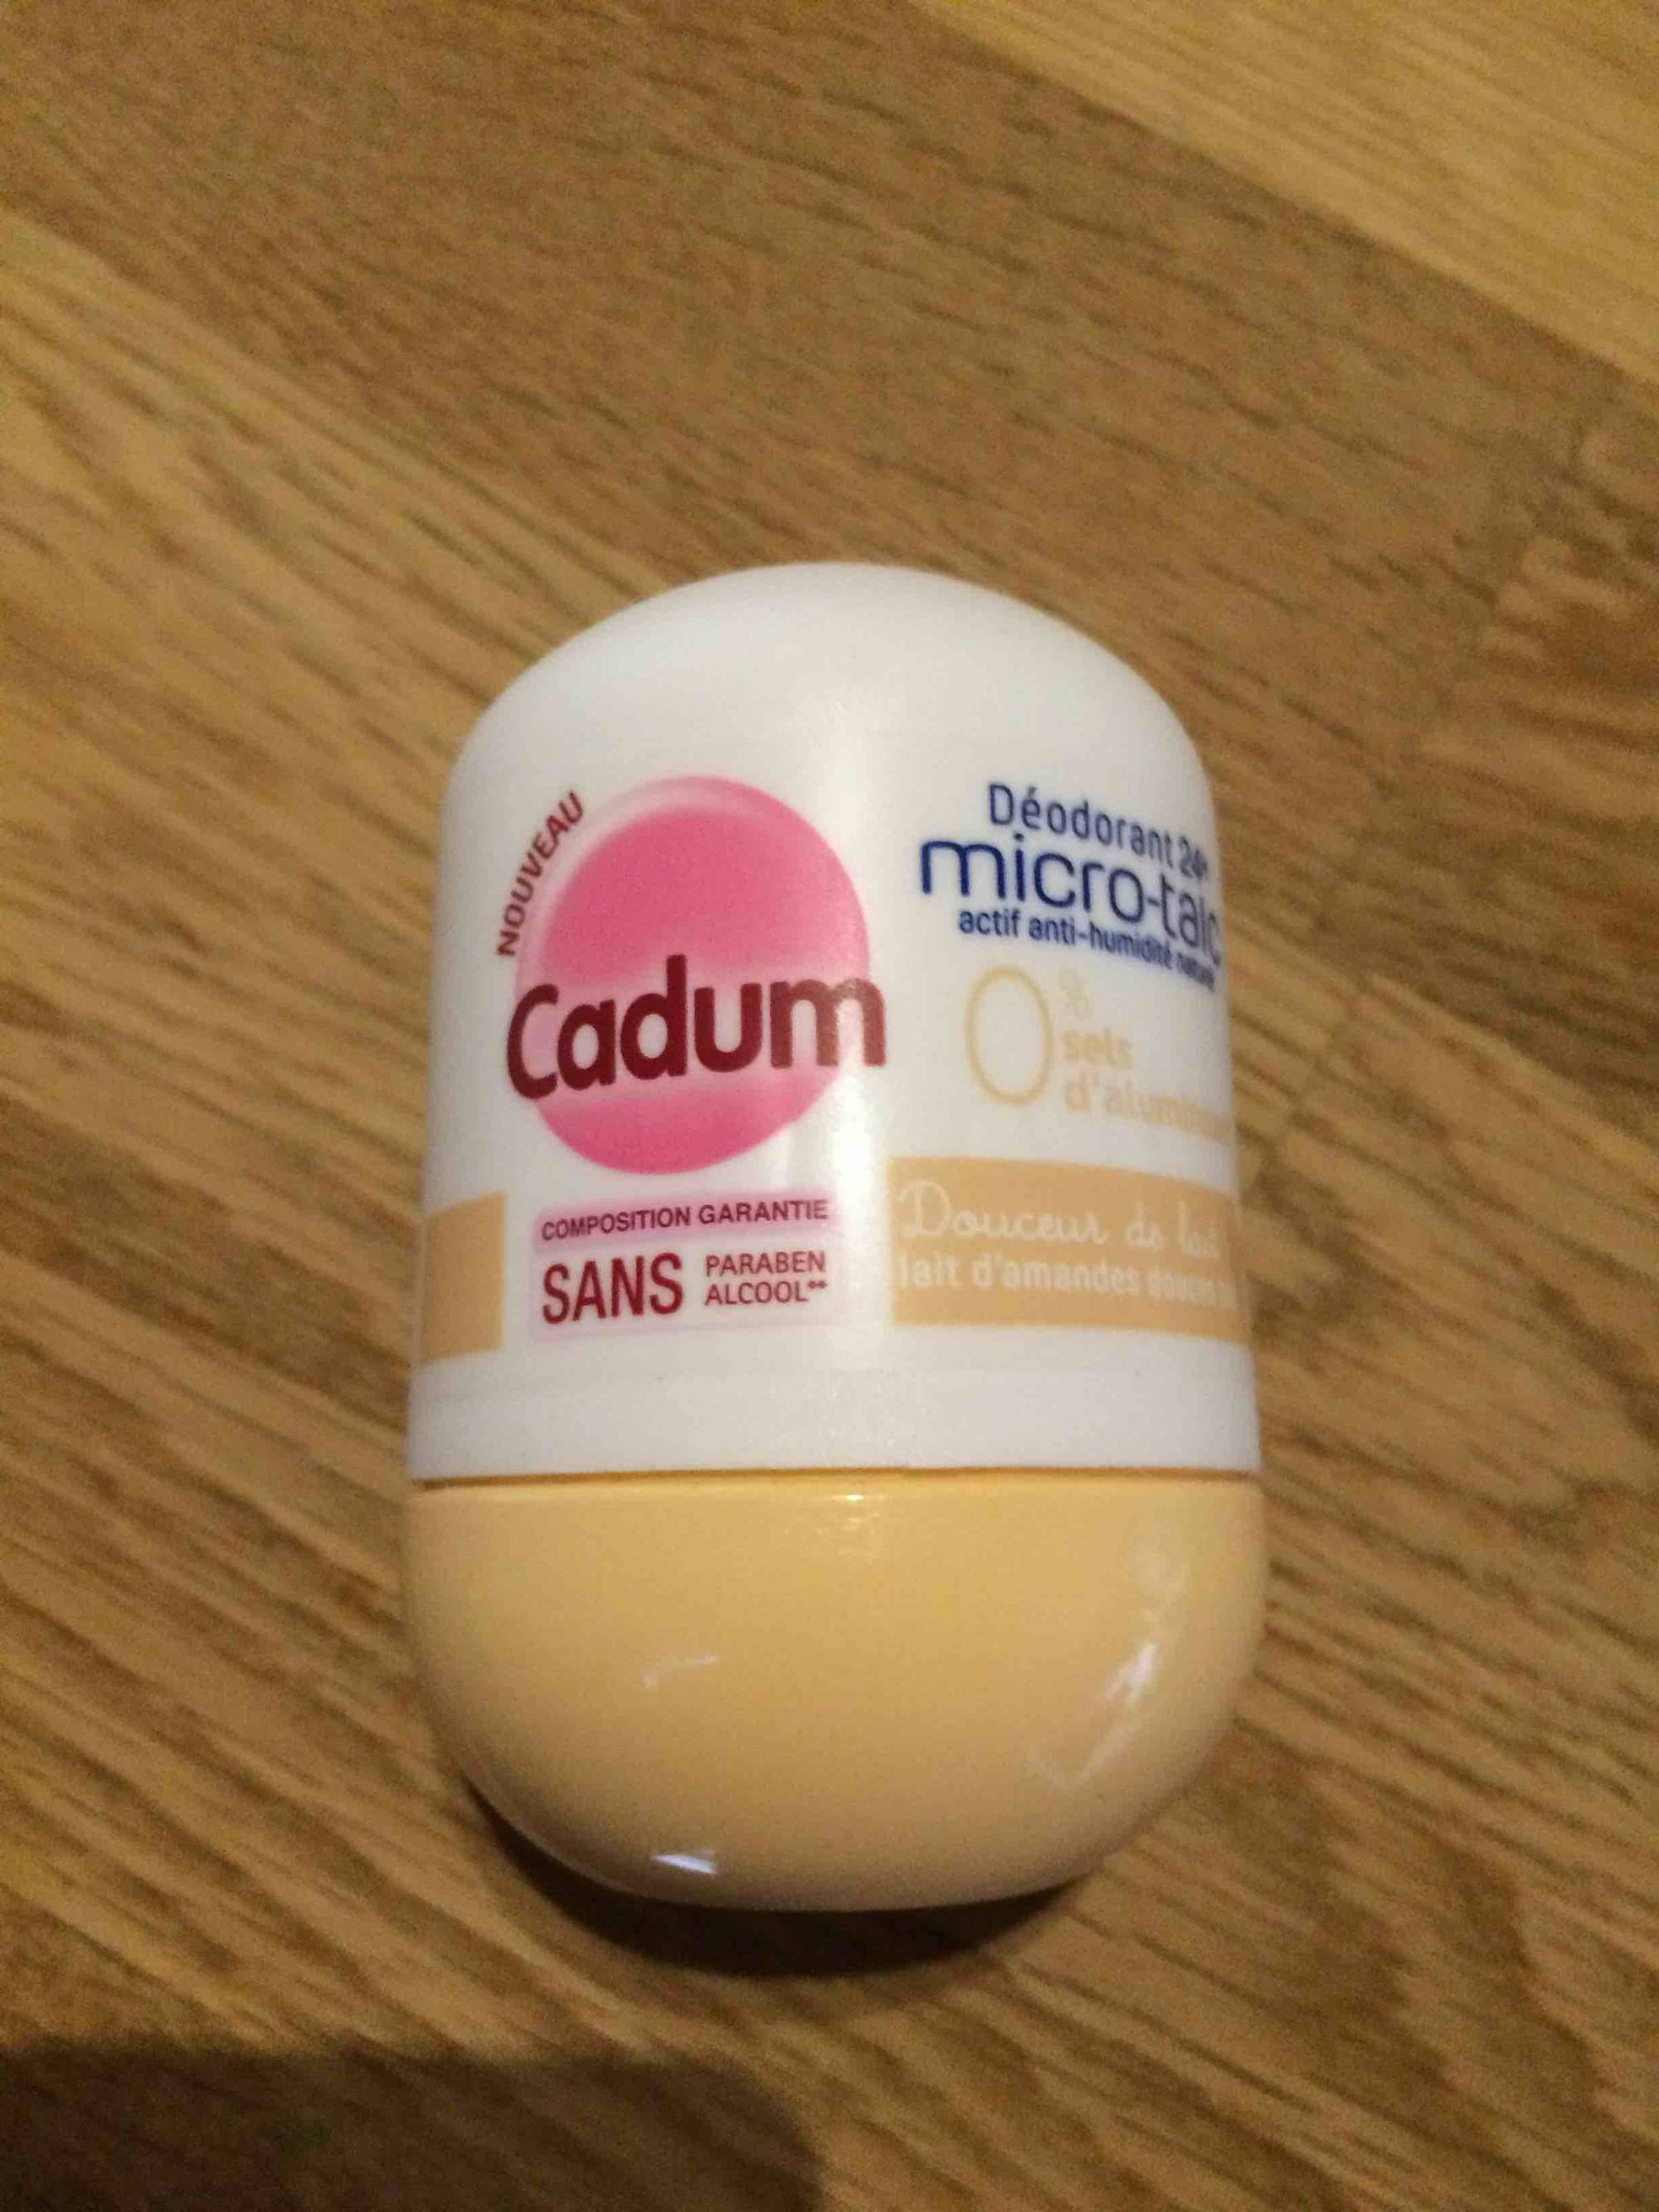 CADUM - Déodorant Micro-talc - Douceur au lait d'amande douce 24h